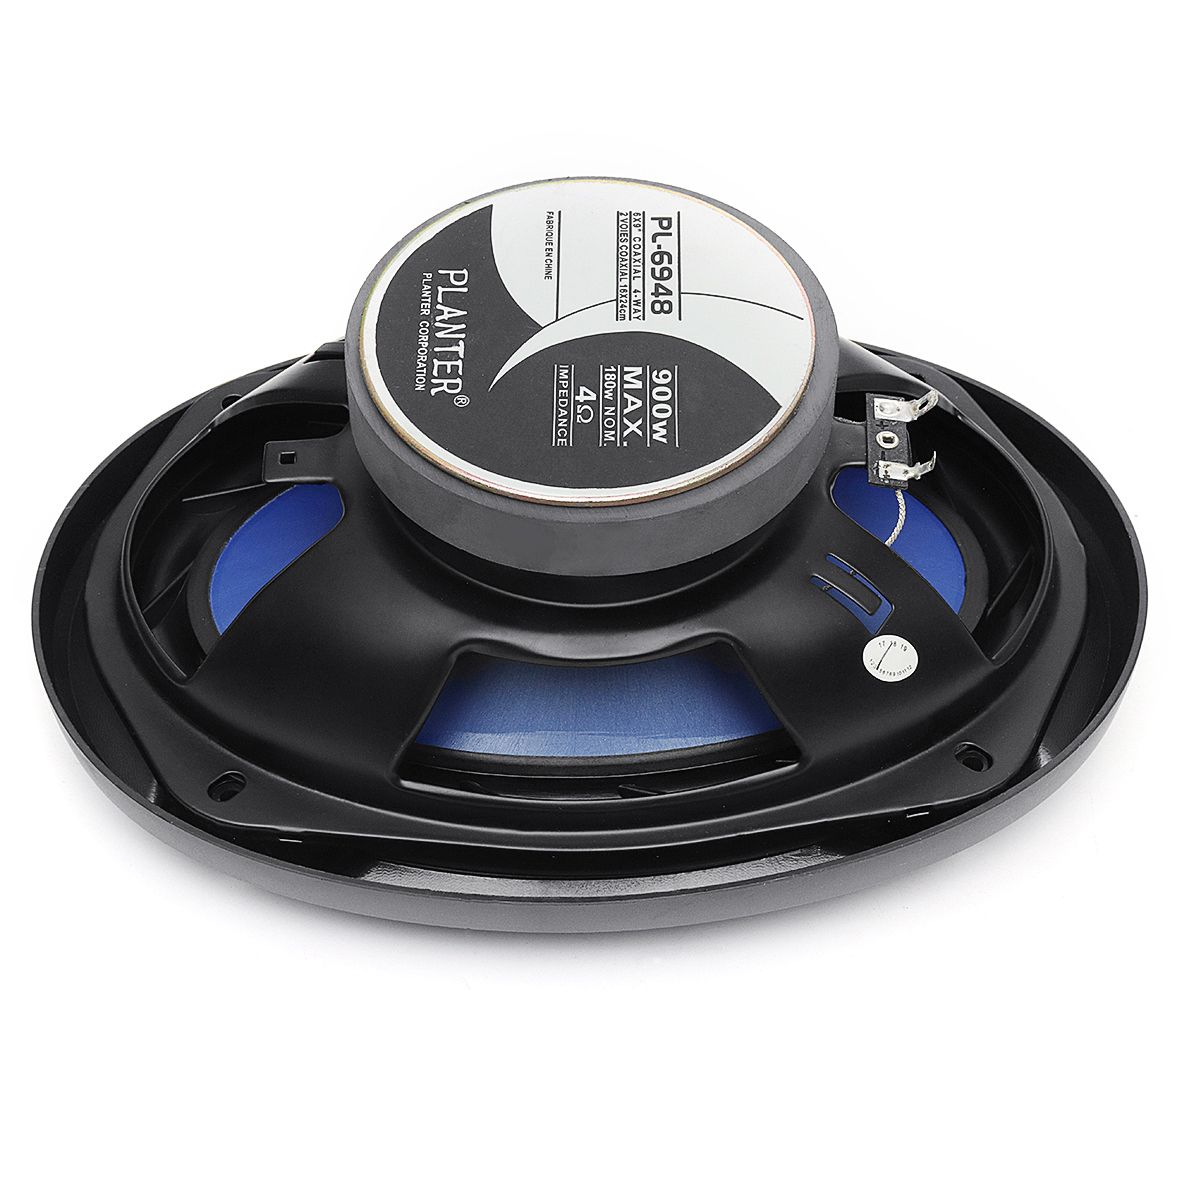 A-Pair-Of-12V-900W-Car-Speaker-Full-Range-Loudspeaker-Subwoofer-1305594